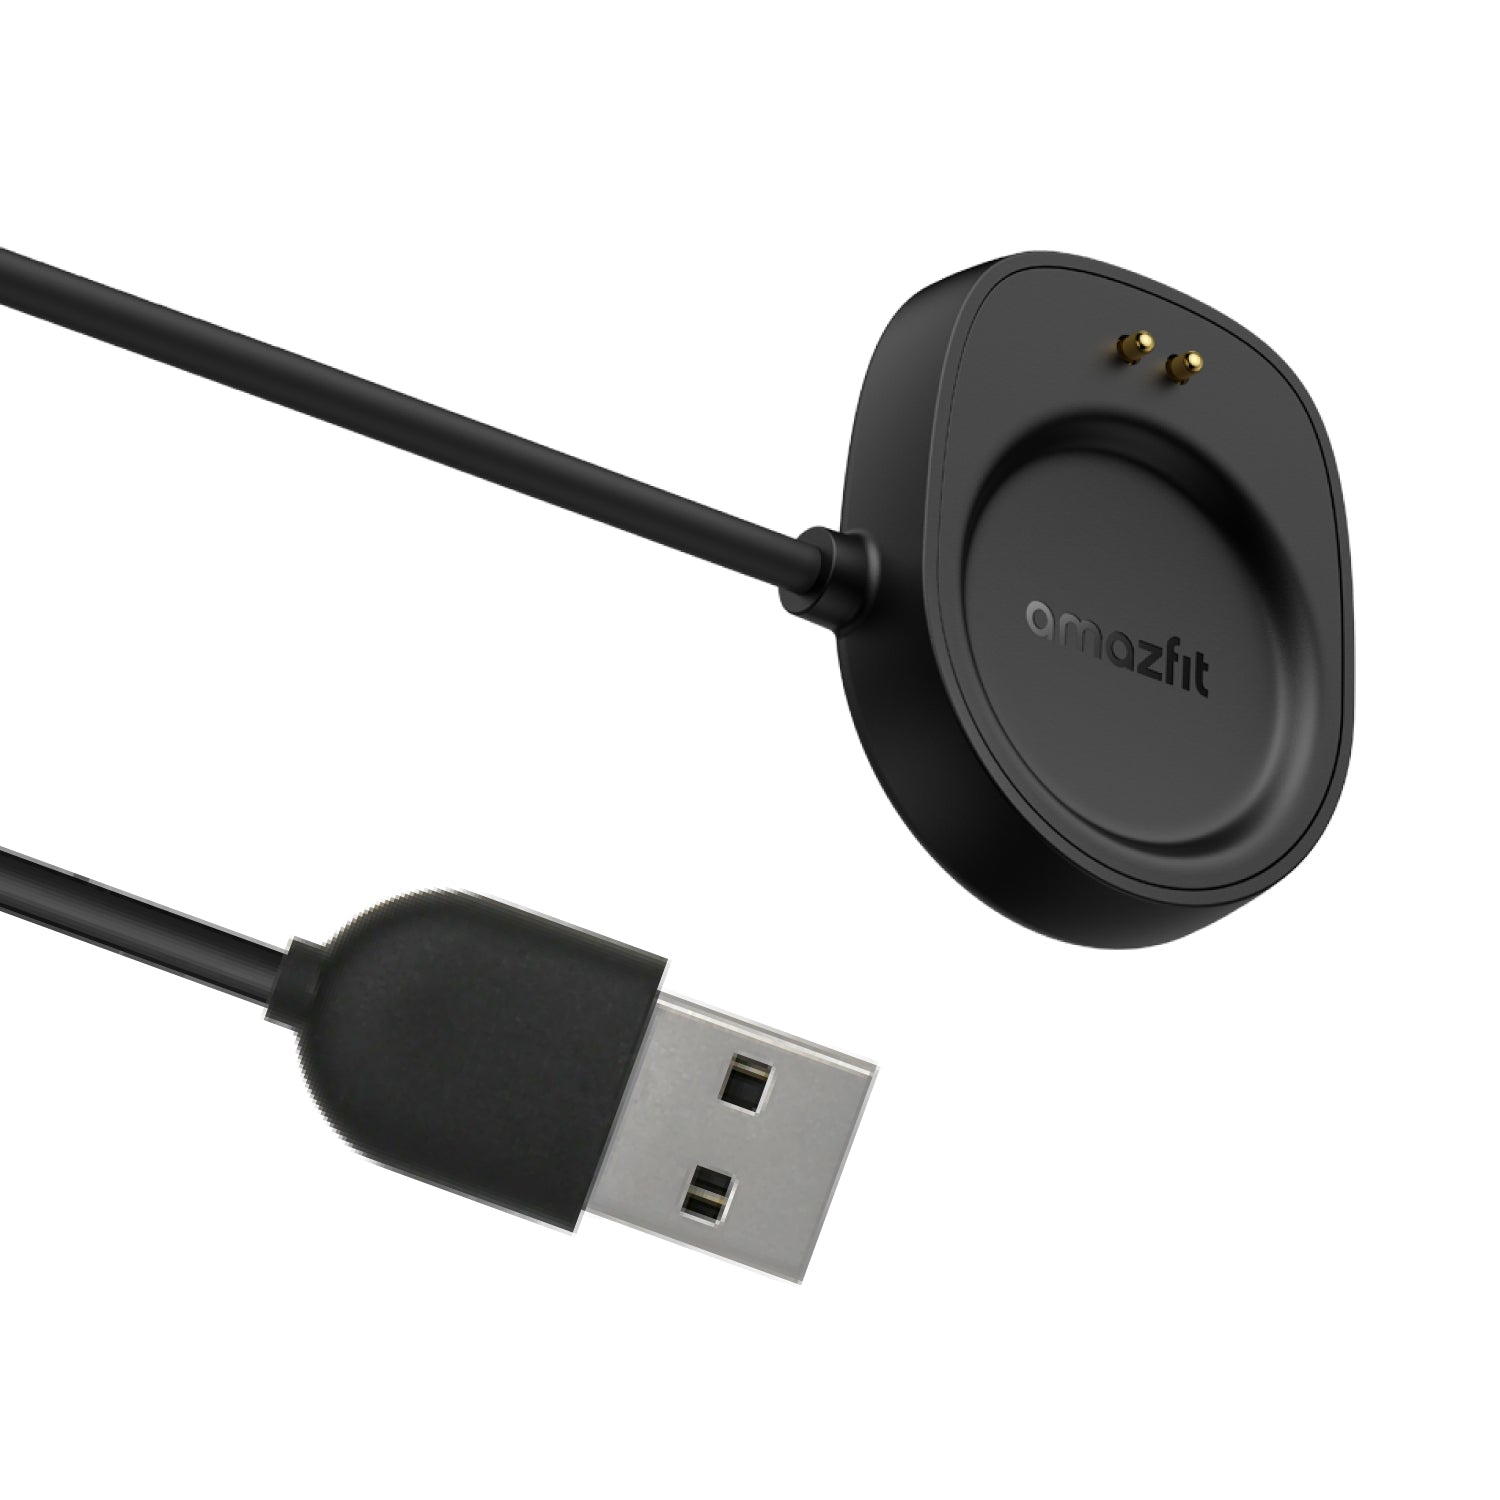 Amazfit 純正品 Balance スマートウォッチ専用 マグネット式 USB 充電器 充電ケーブル